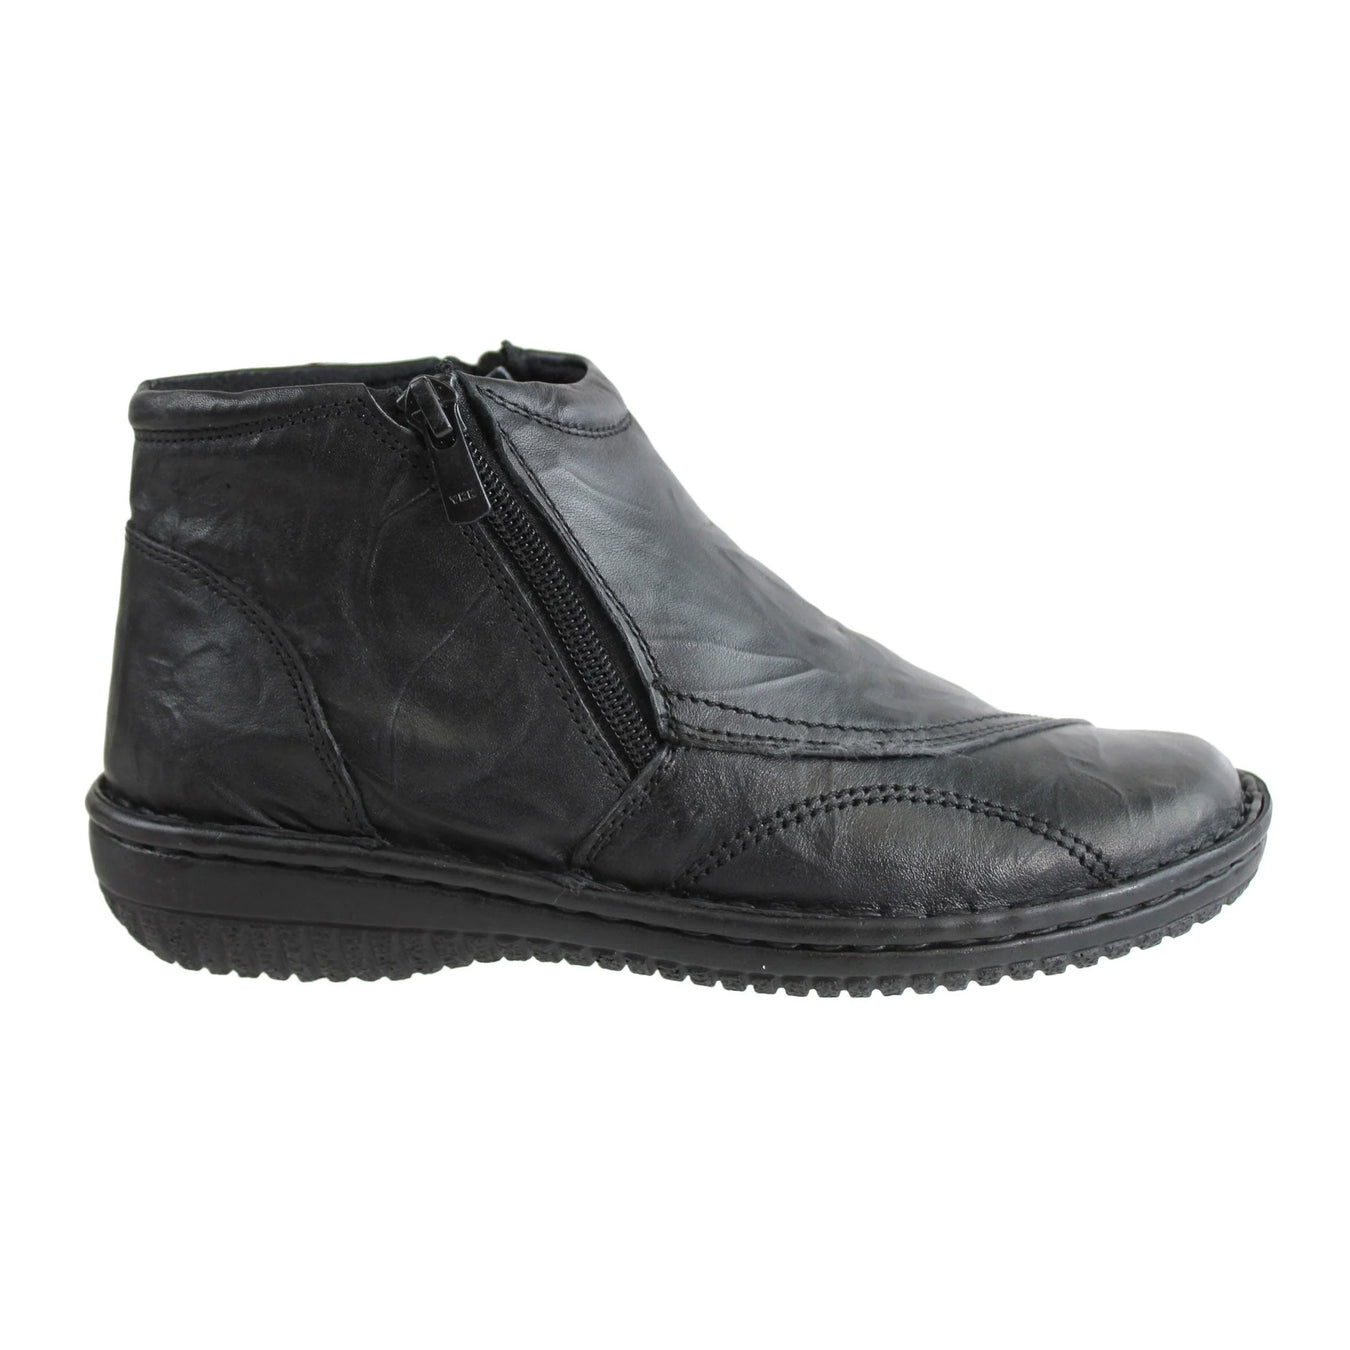 Online Shoe Store | Buy Women's & Men's Shoes | Comfort Shoe Co